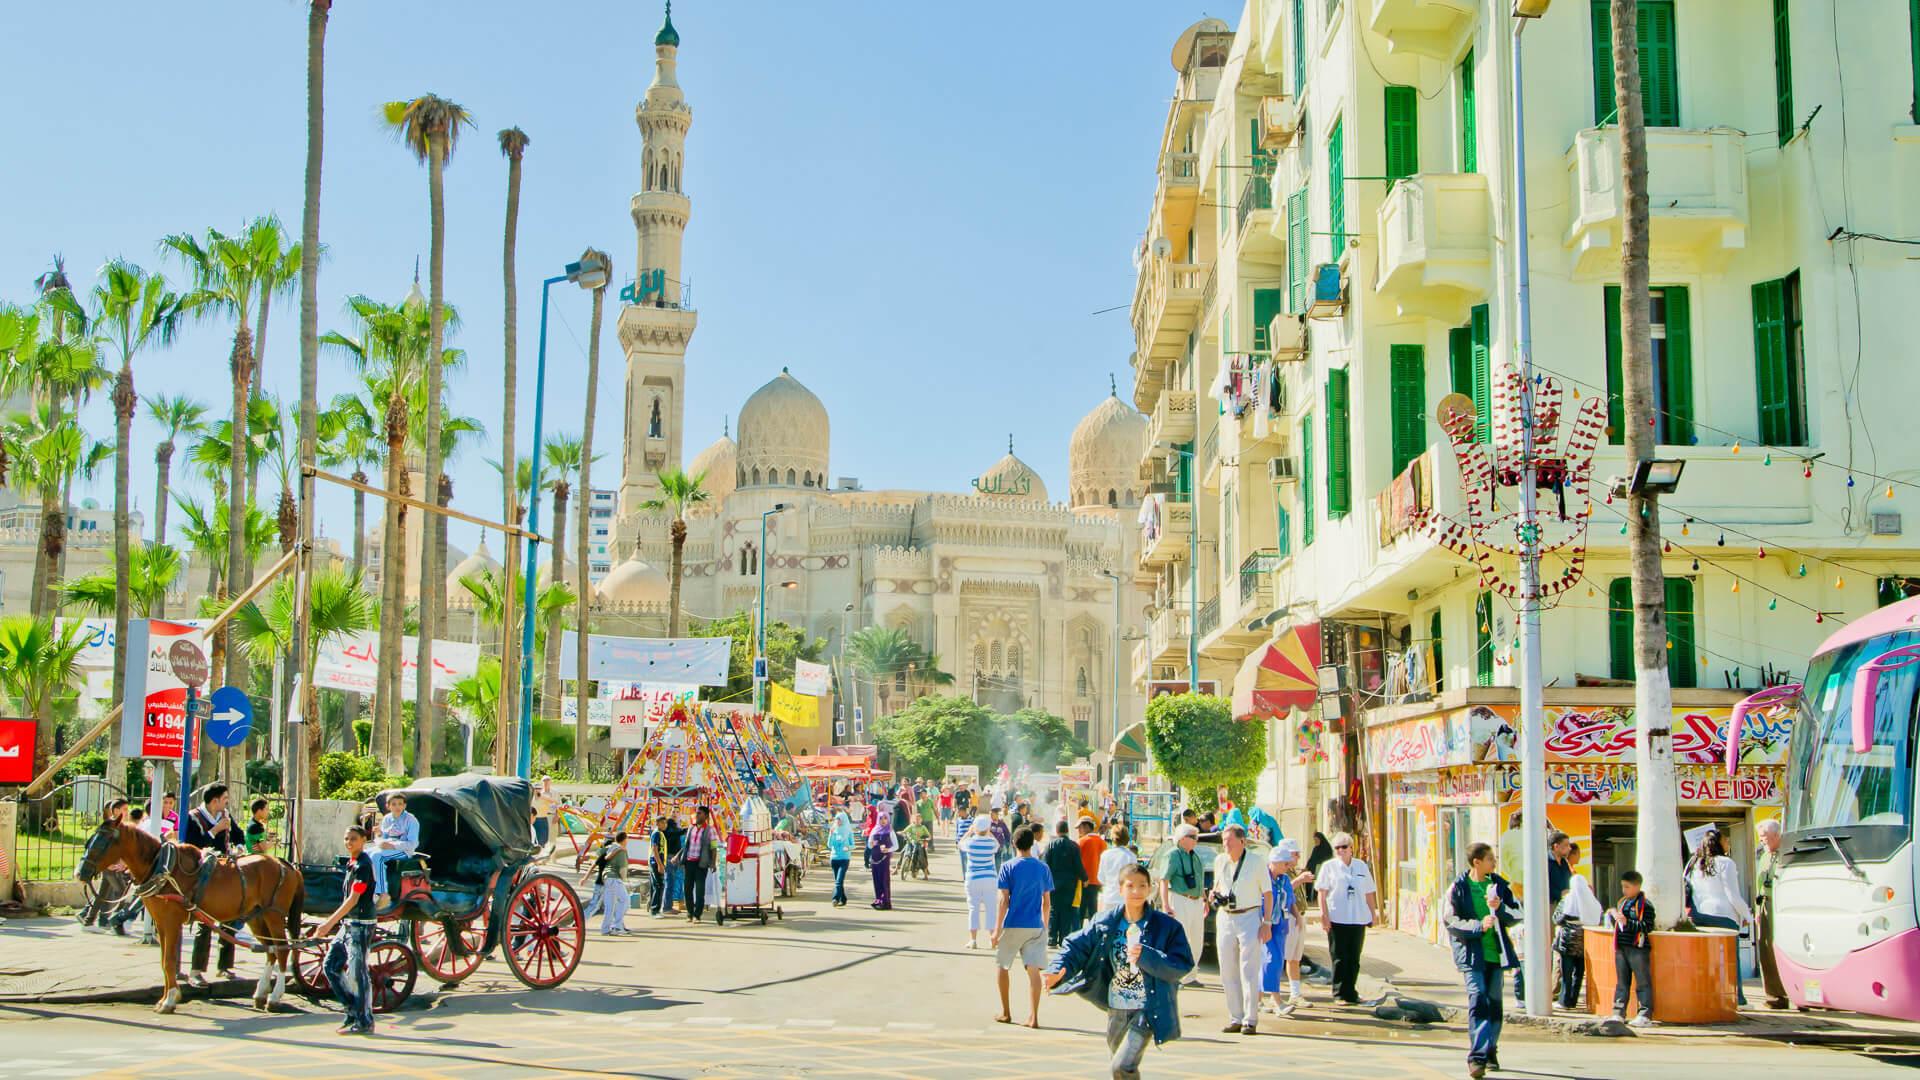 Alexandria Egypt market